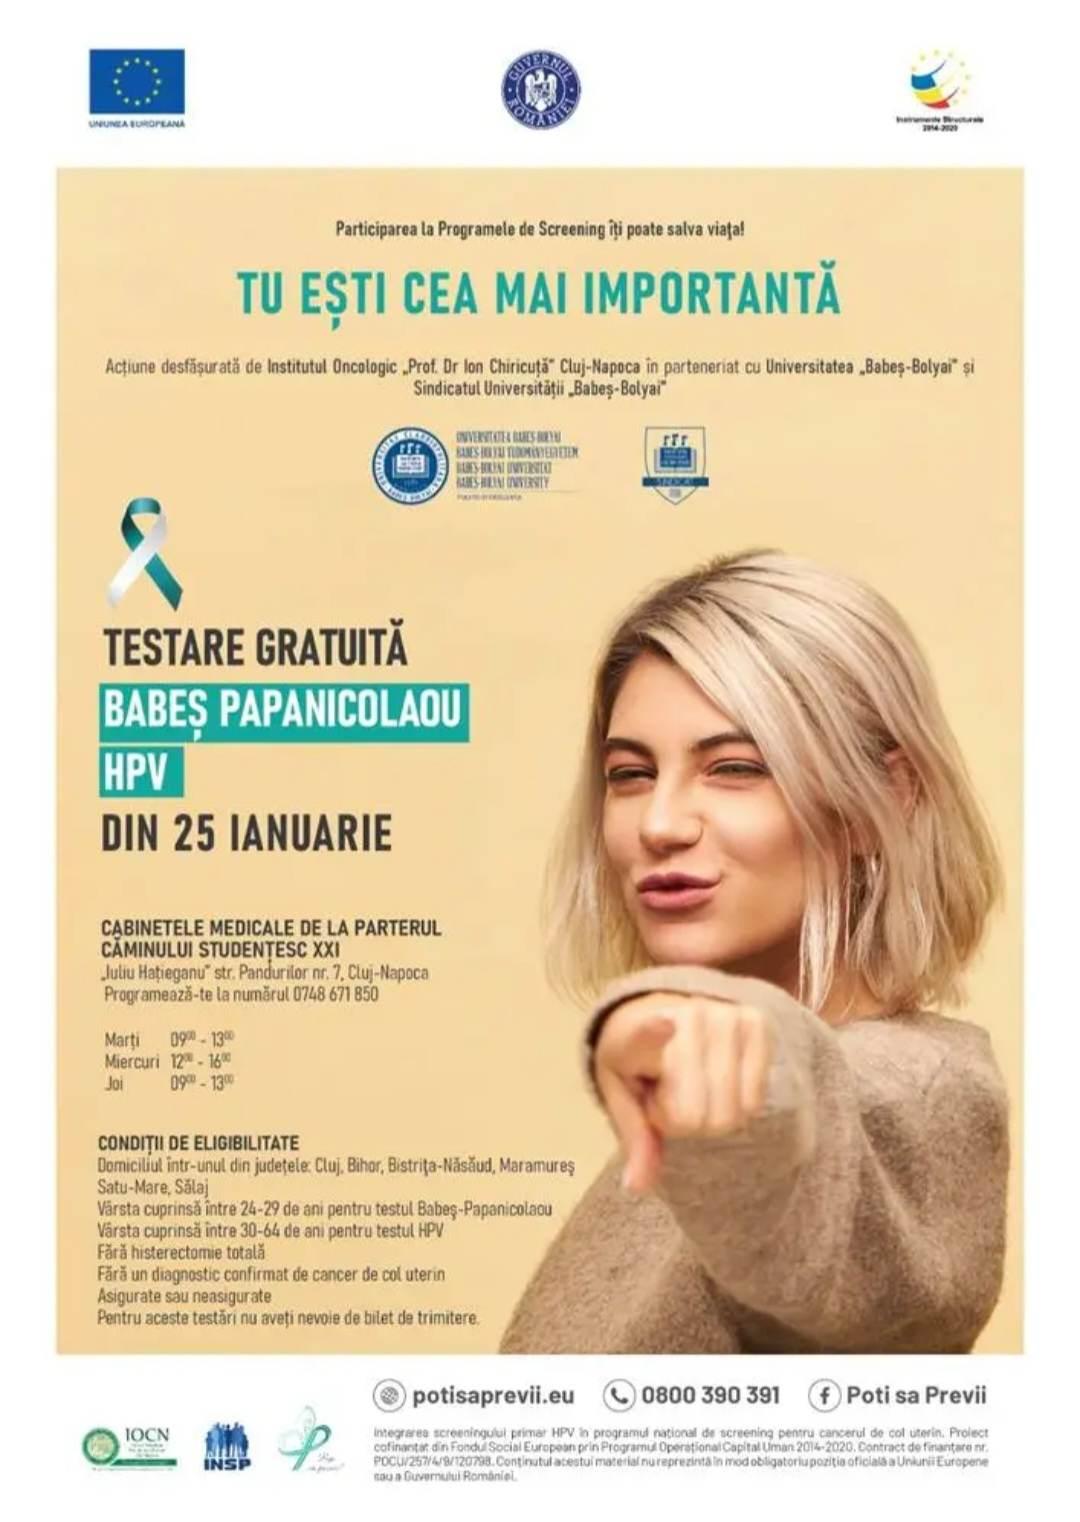 Testări gratuite Babeş-Papanicolau și HPV la Cluj-Napoca! Cine poate beneficia